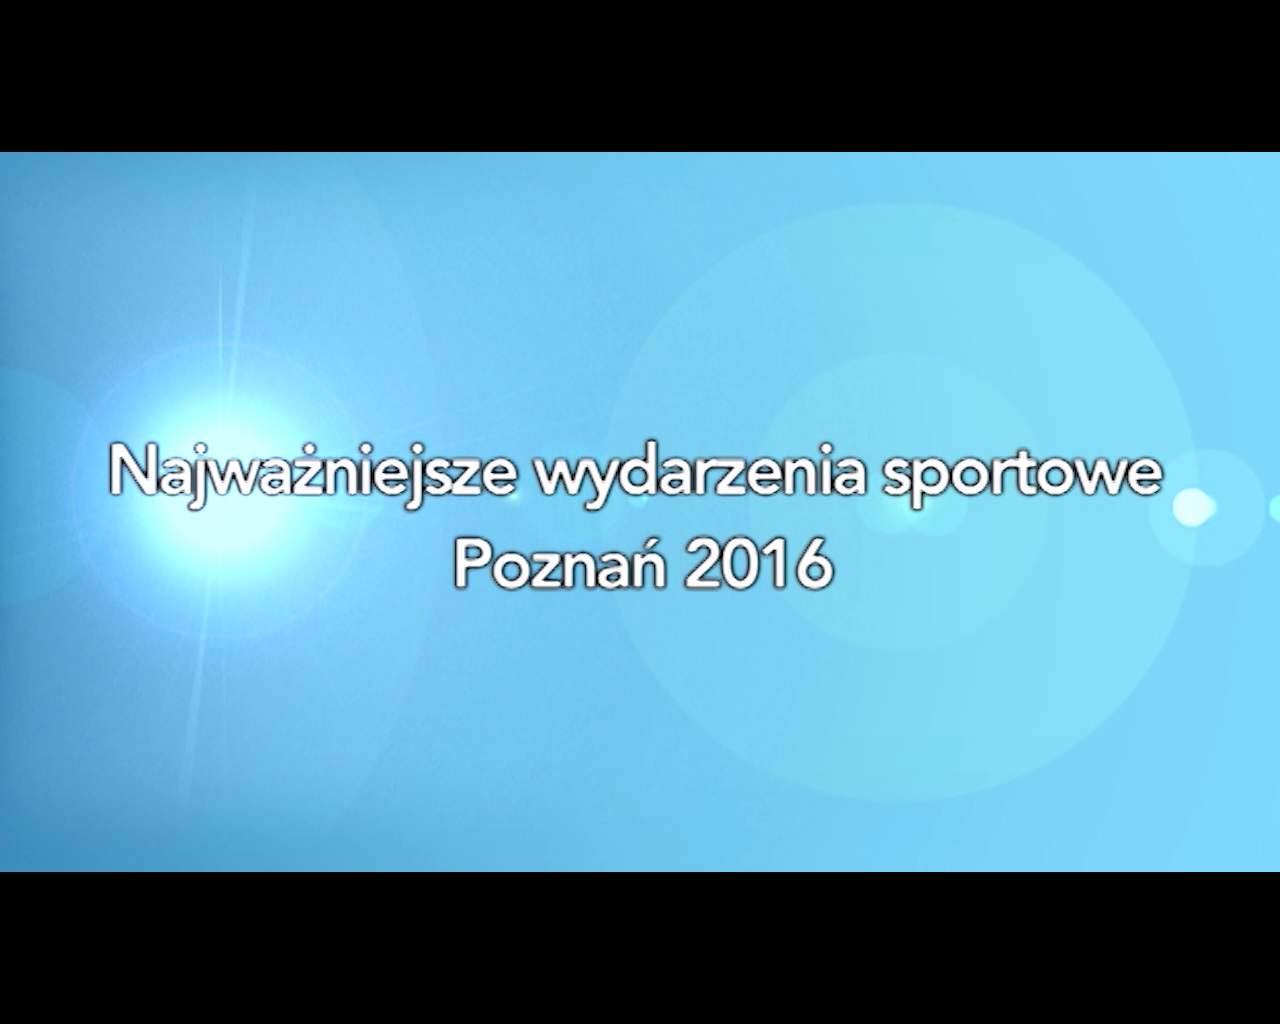 Poznańska Gala Sportu 2017 - Imprezy Sportowe 2016